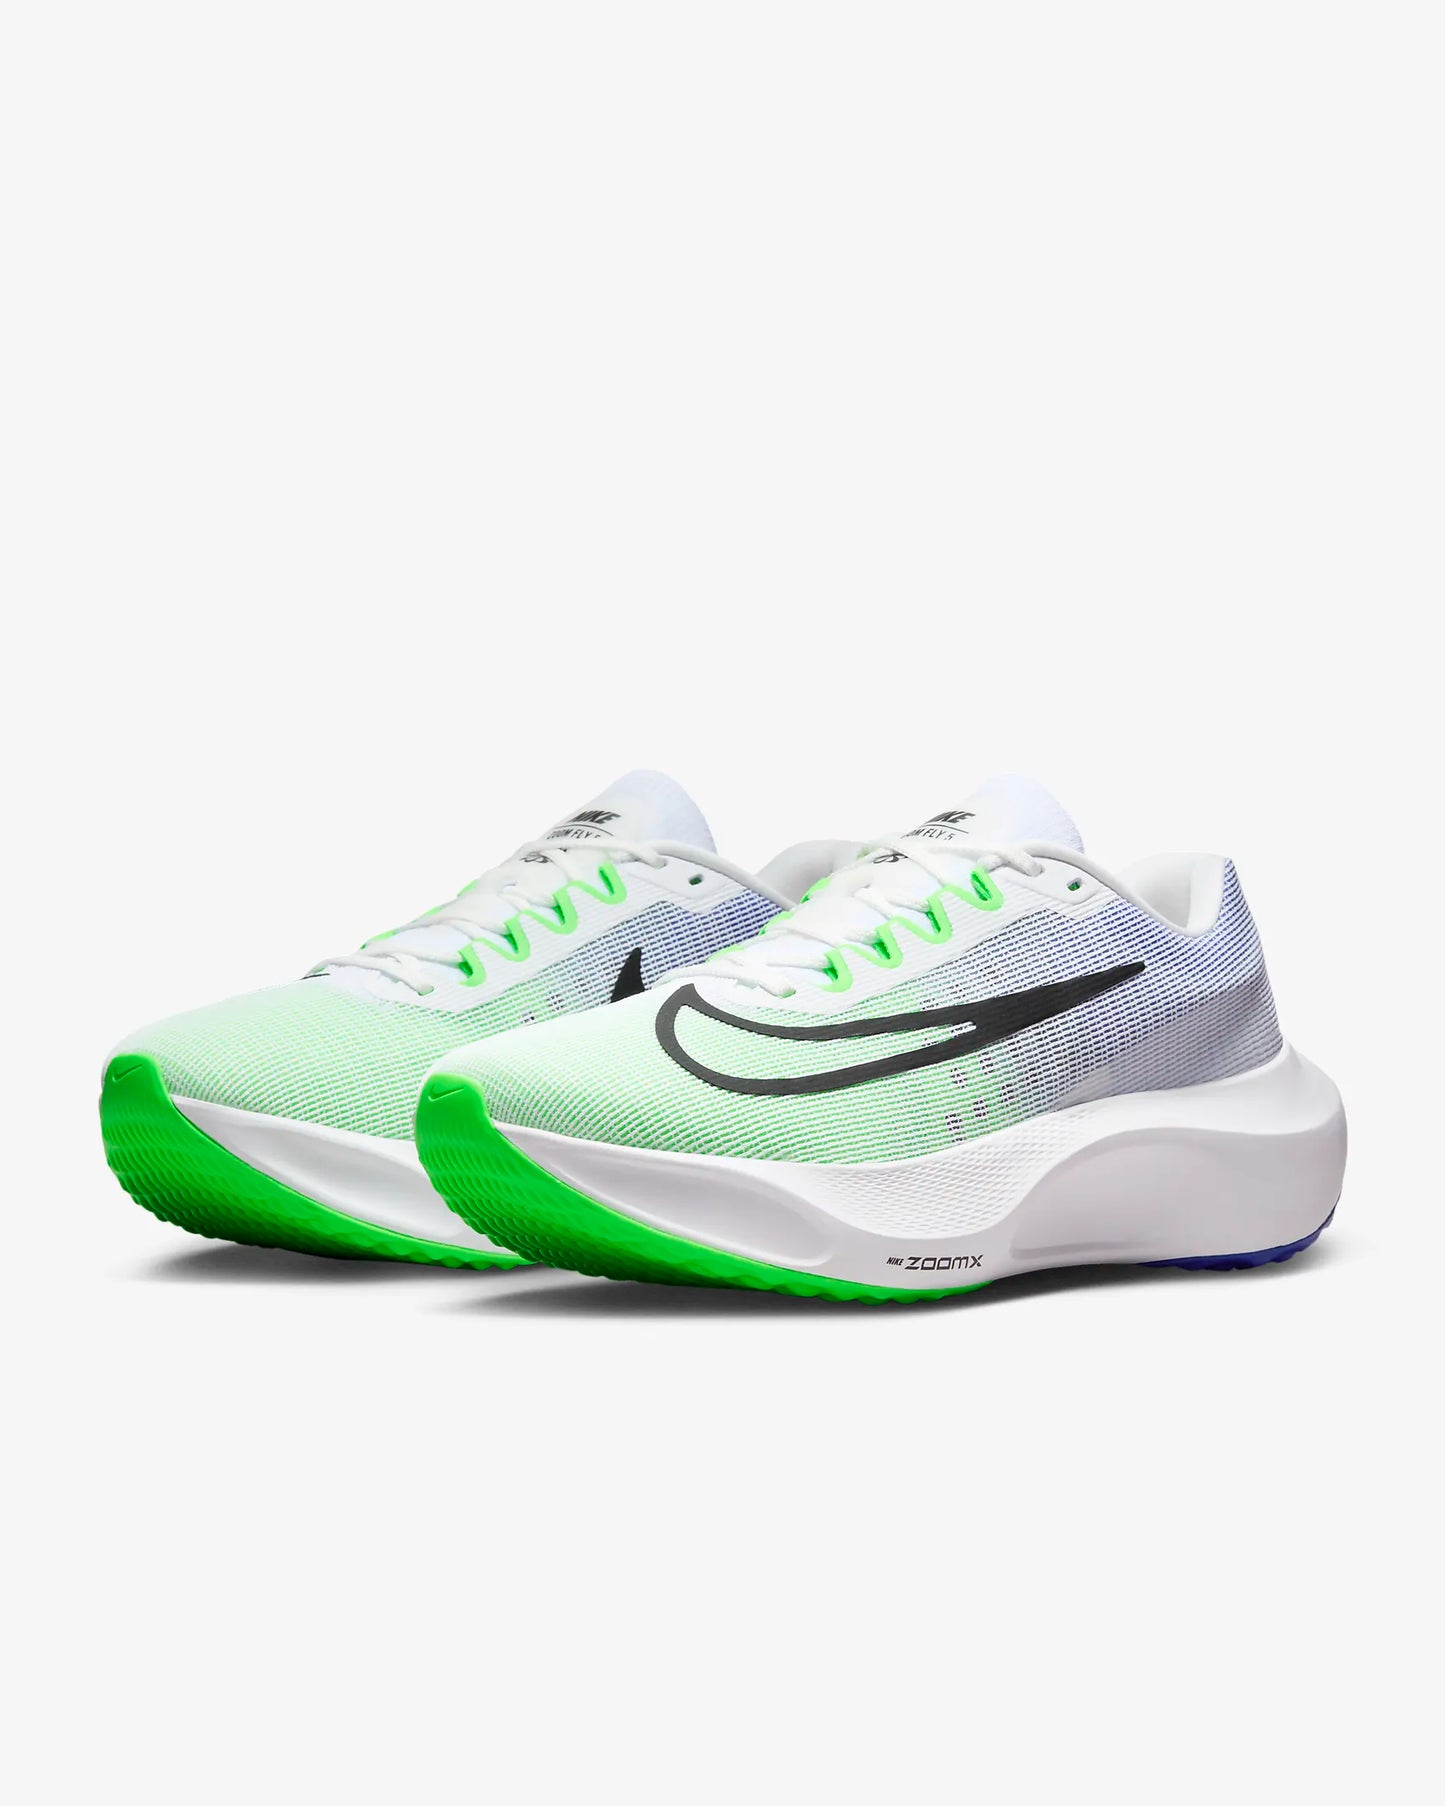 Nike Zoom Fly 5 Men's - White/Black-Green-racer blue